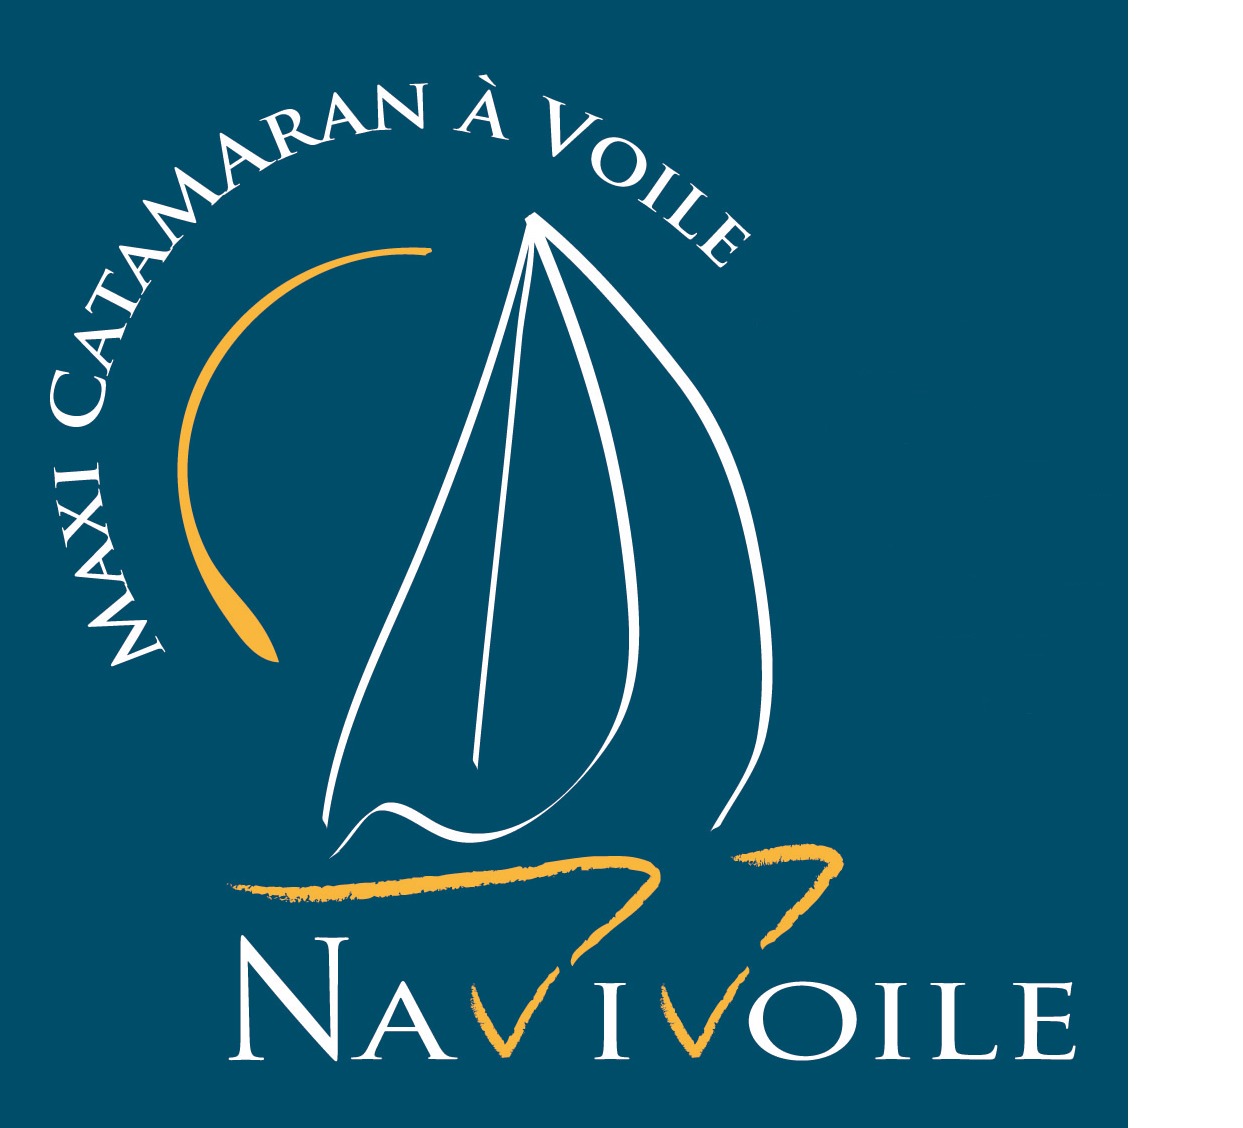 Logotip de Navivoile